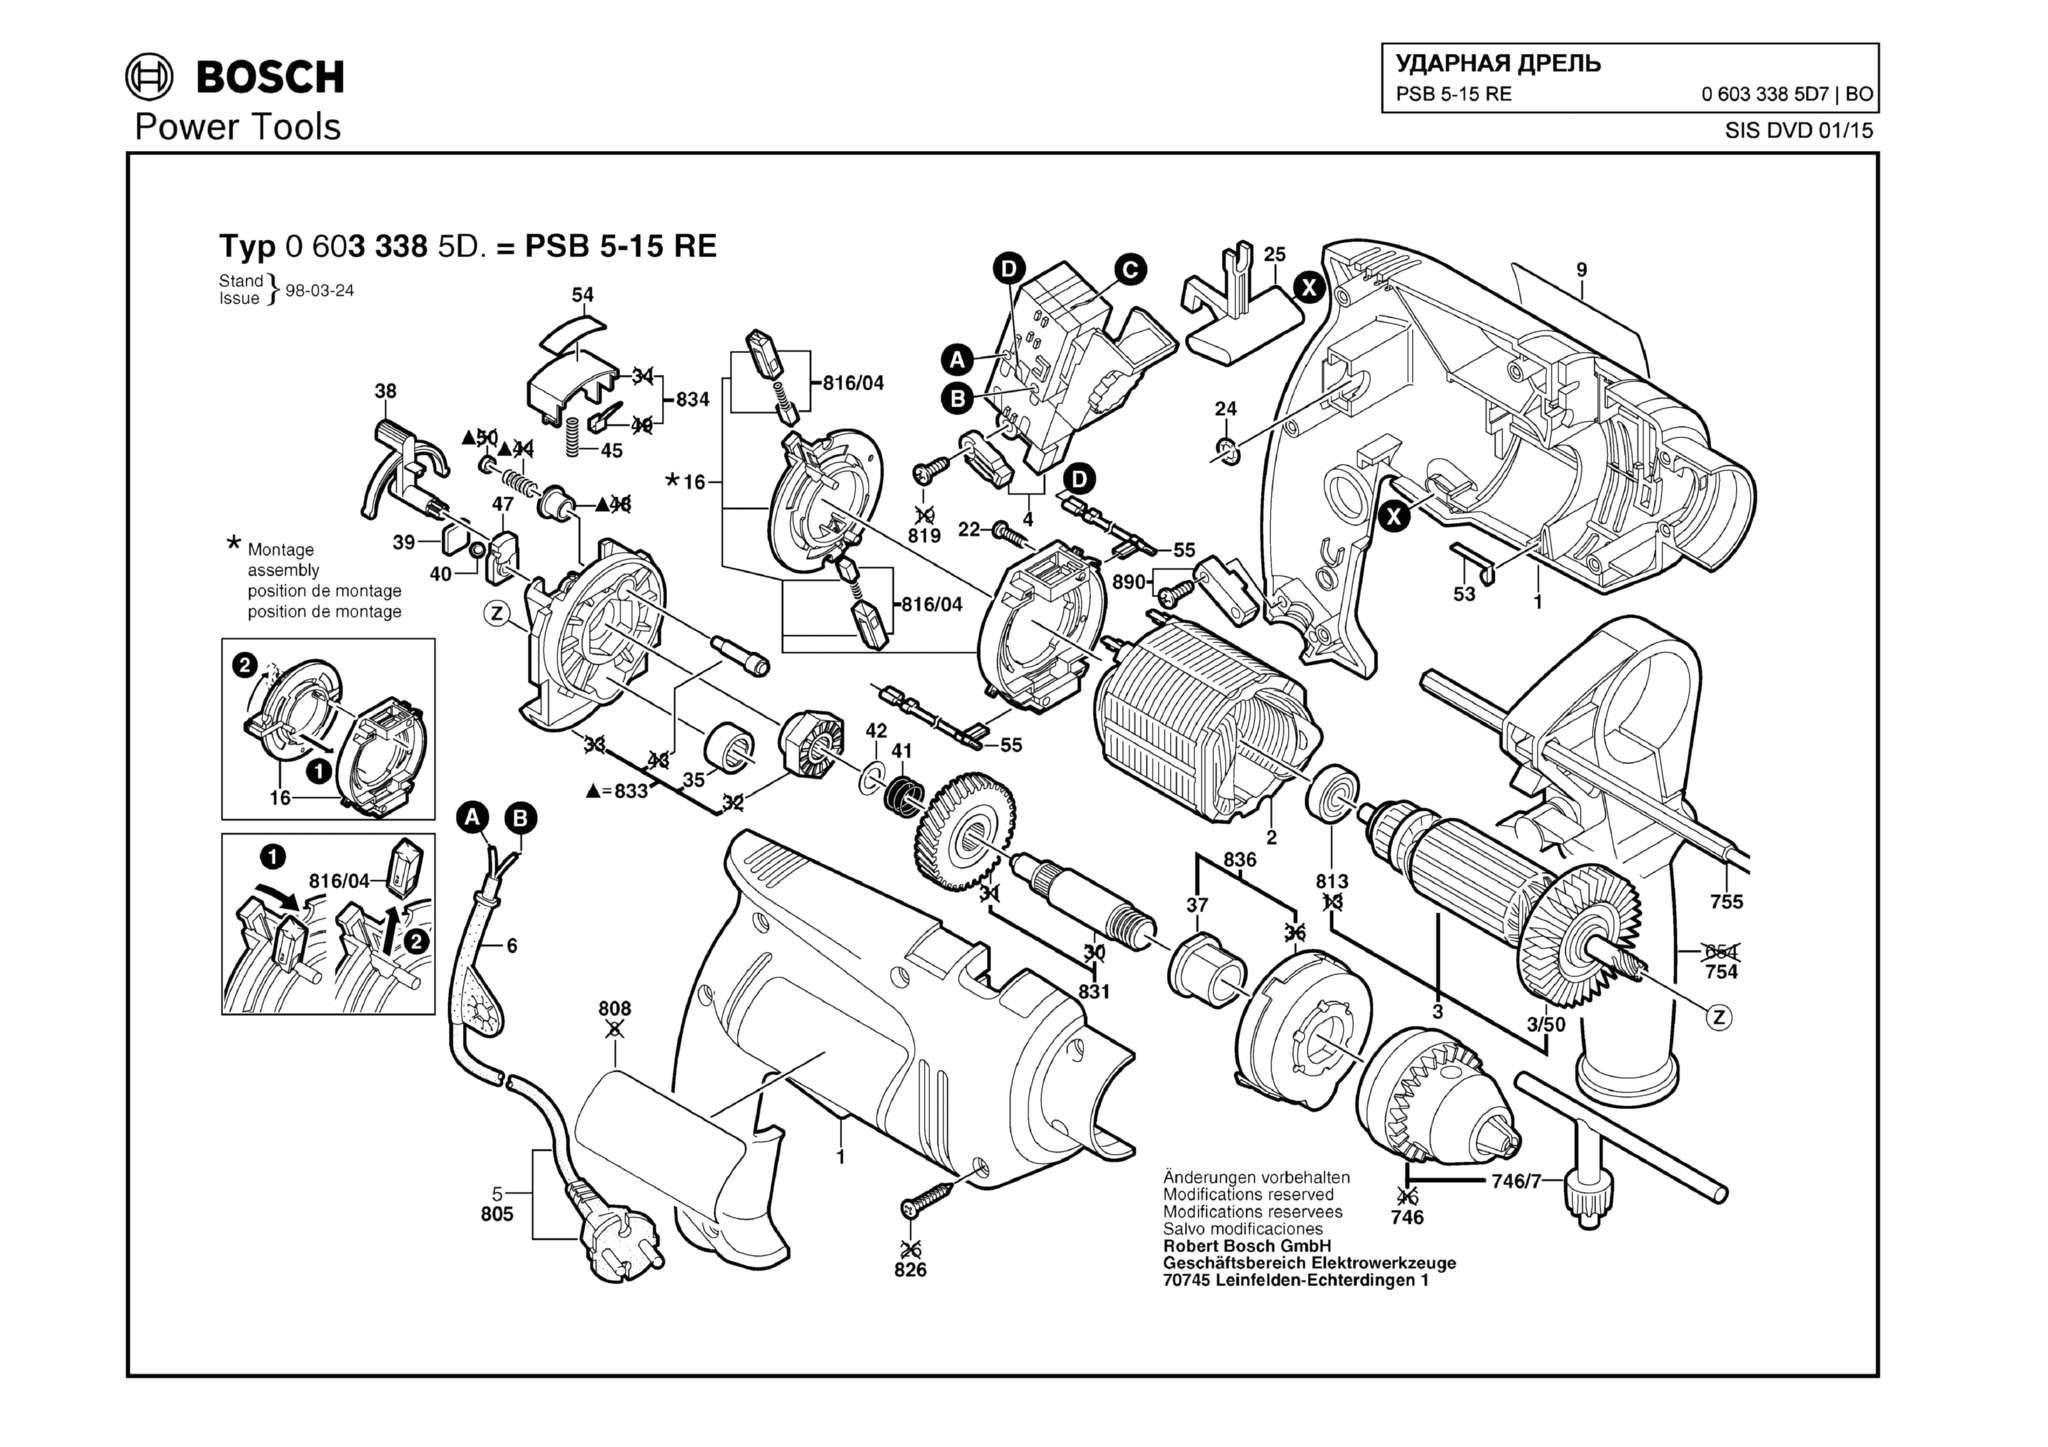 Запчасти, схема и деталировка Bosch PSB 5-15 RE (ТИП 06033385D7)